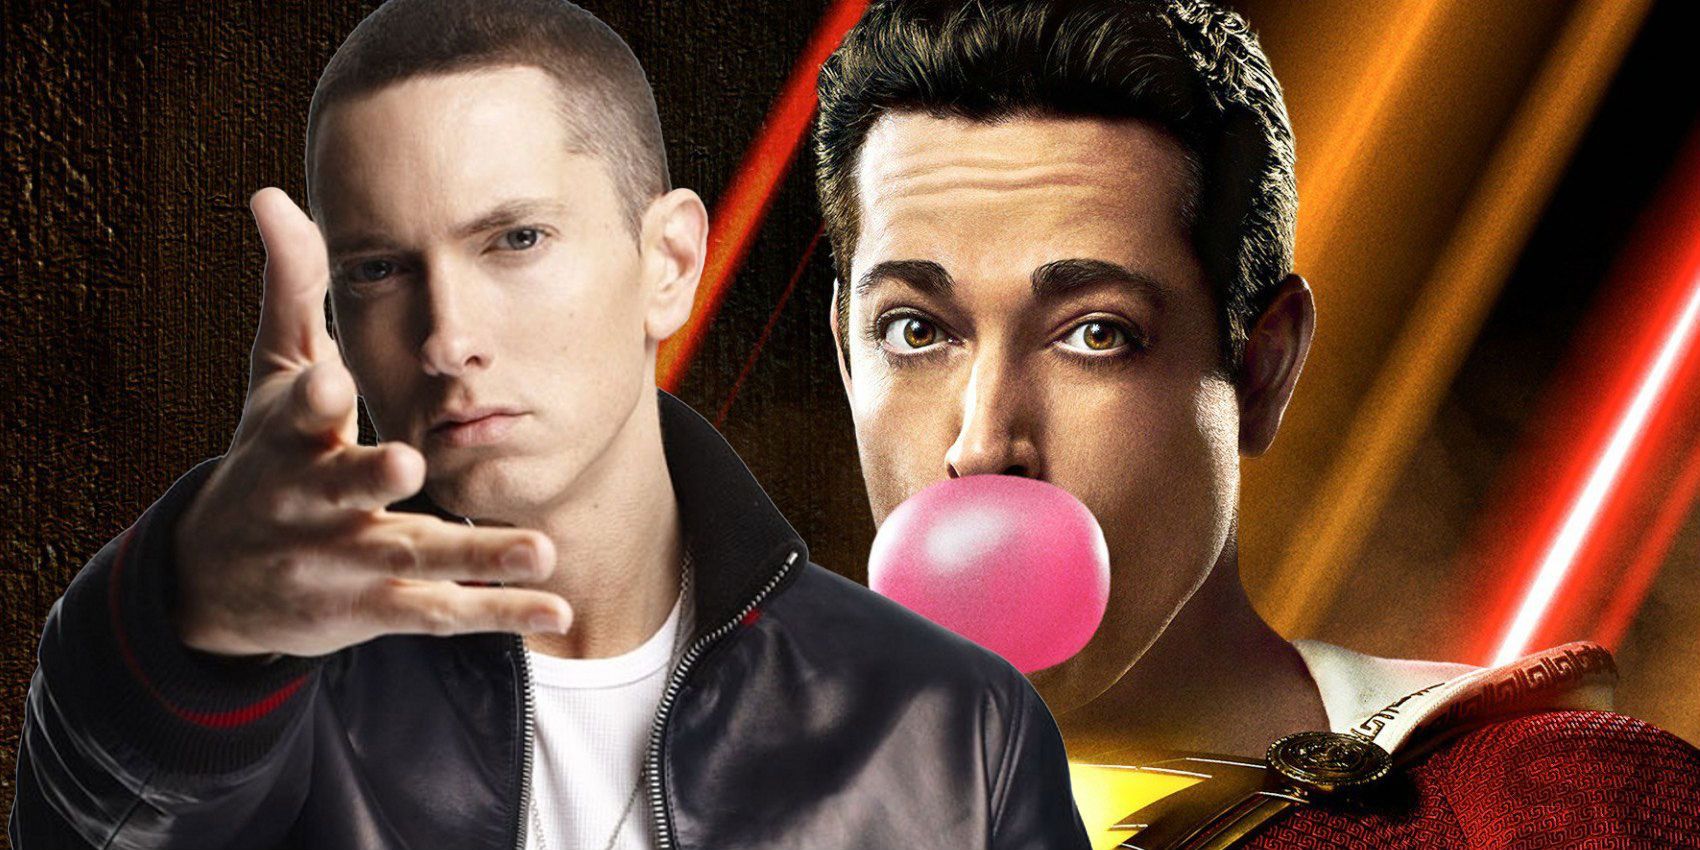 Shazam and Eminem